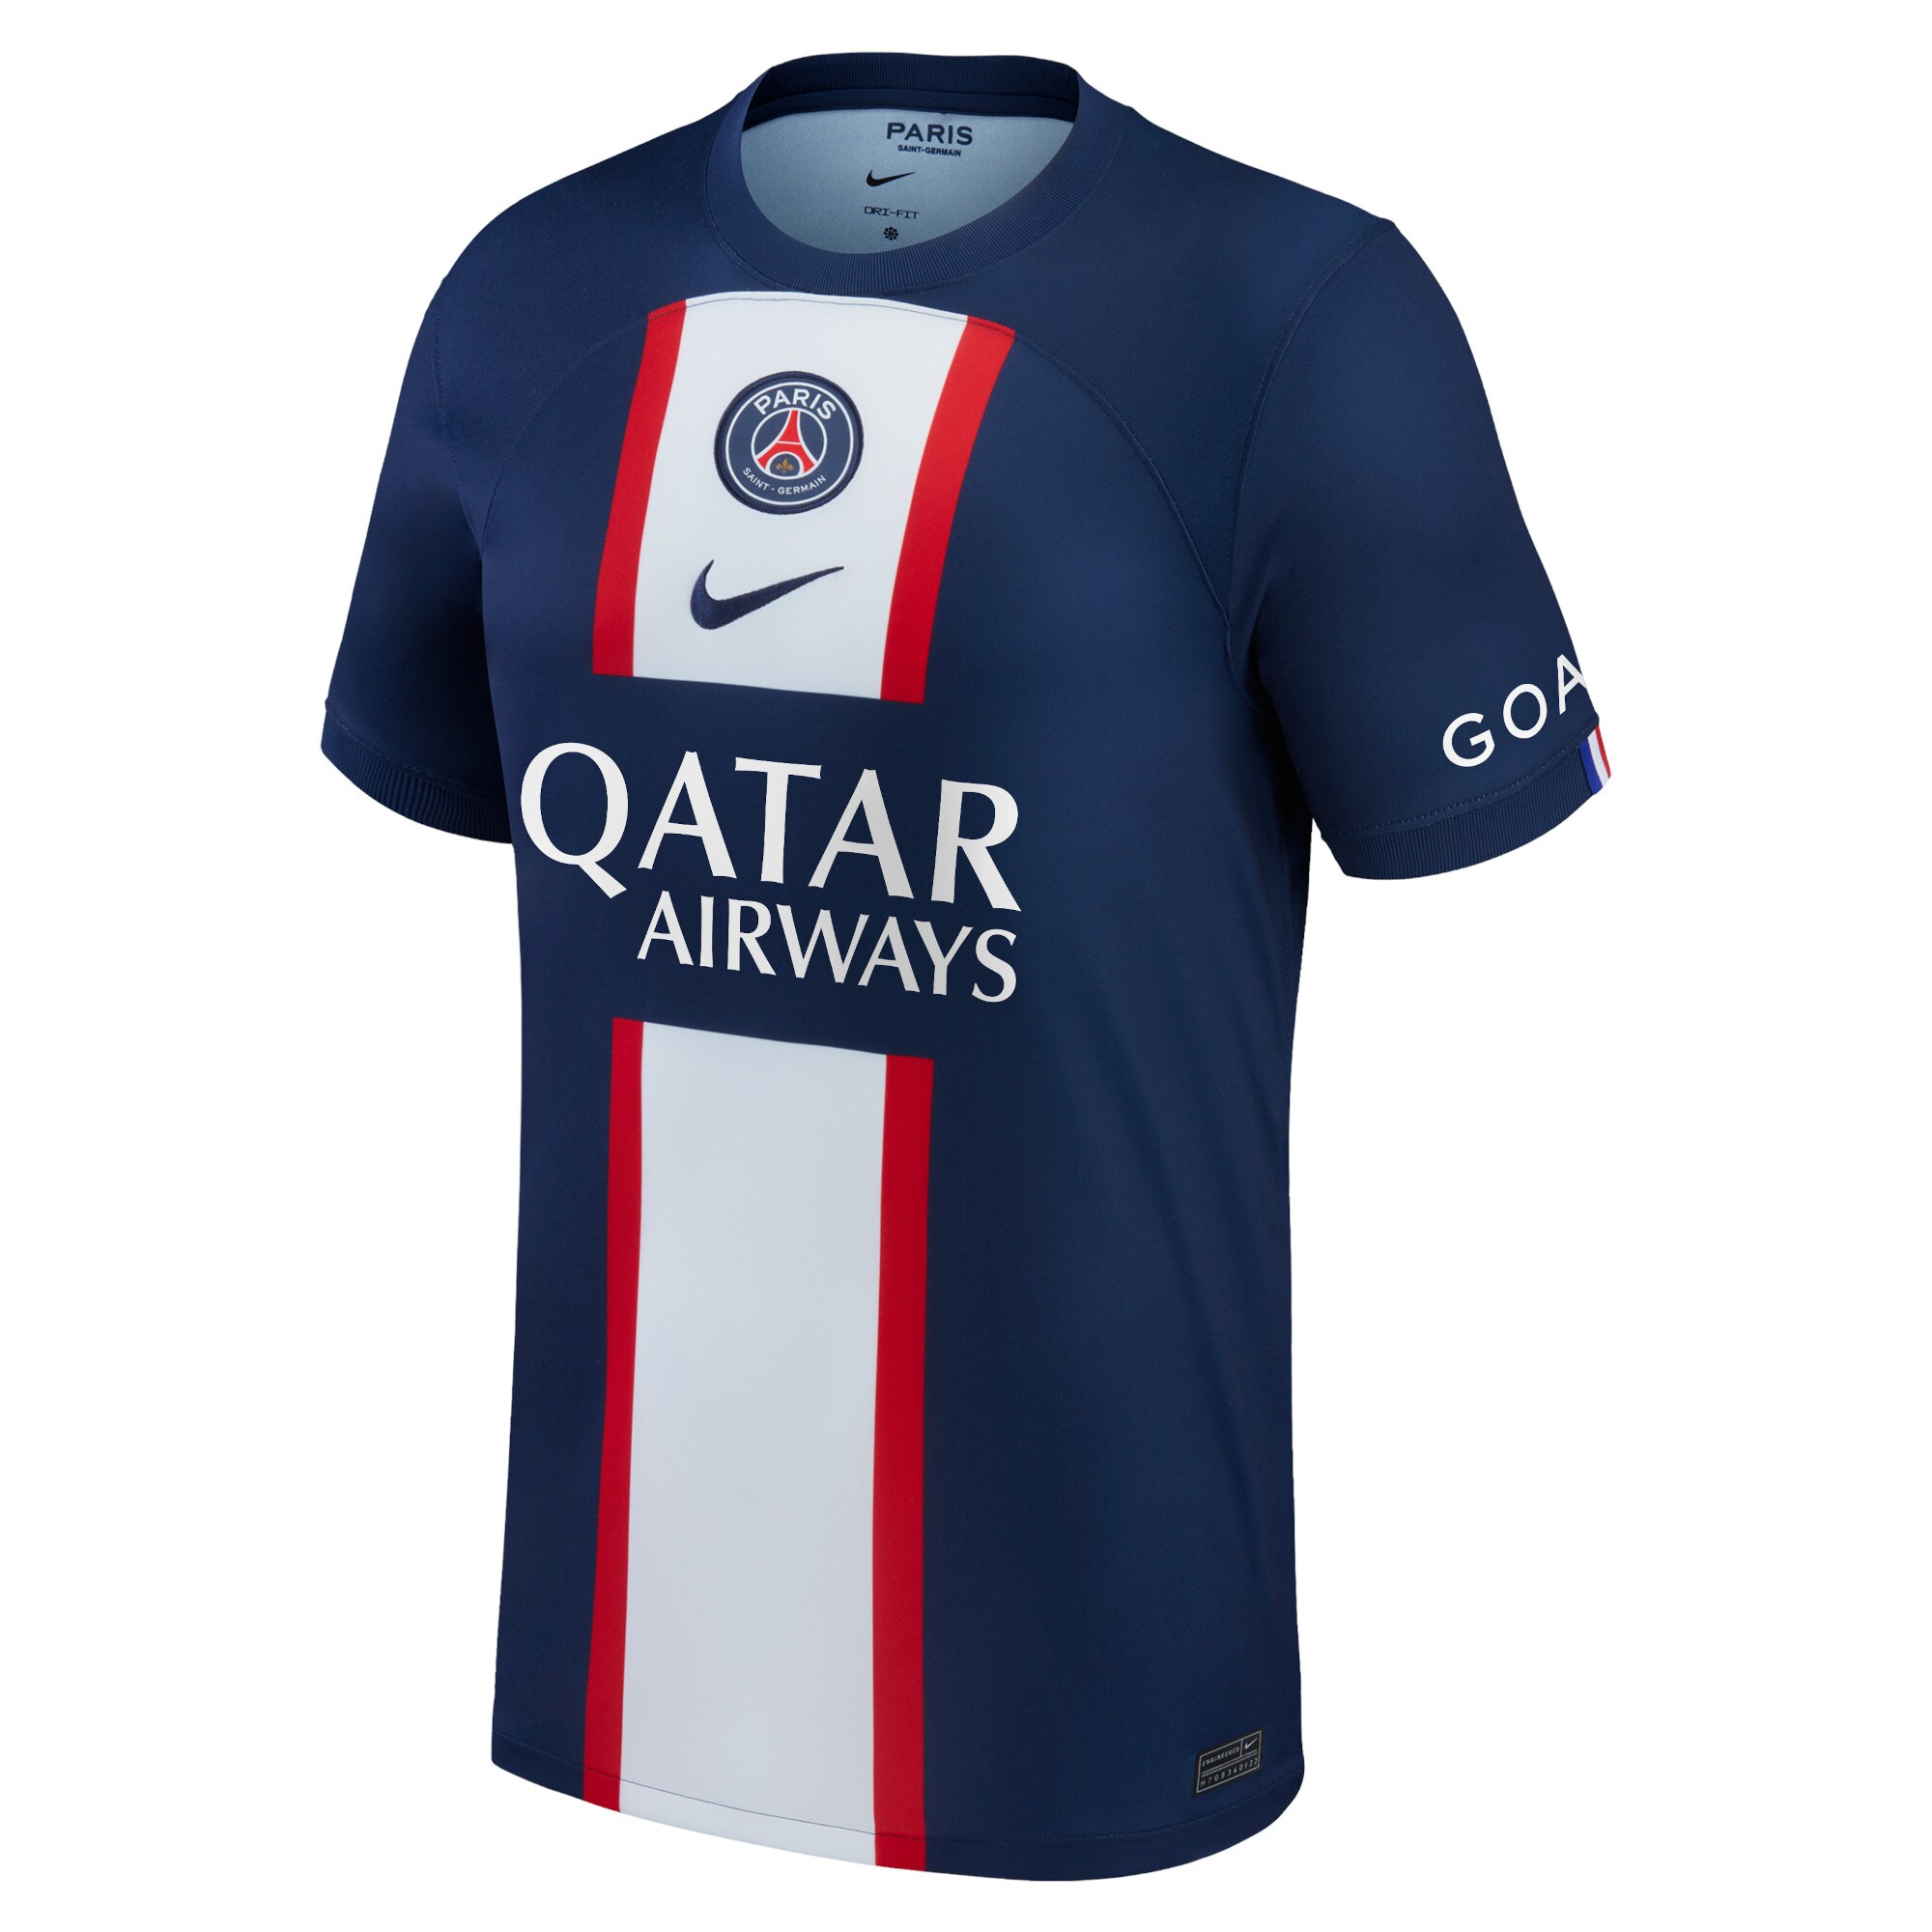 Paris Saint-Germain Home Stadium Shirt 2022-2023 with Dina Ebimbe 28 printing